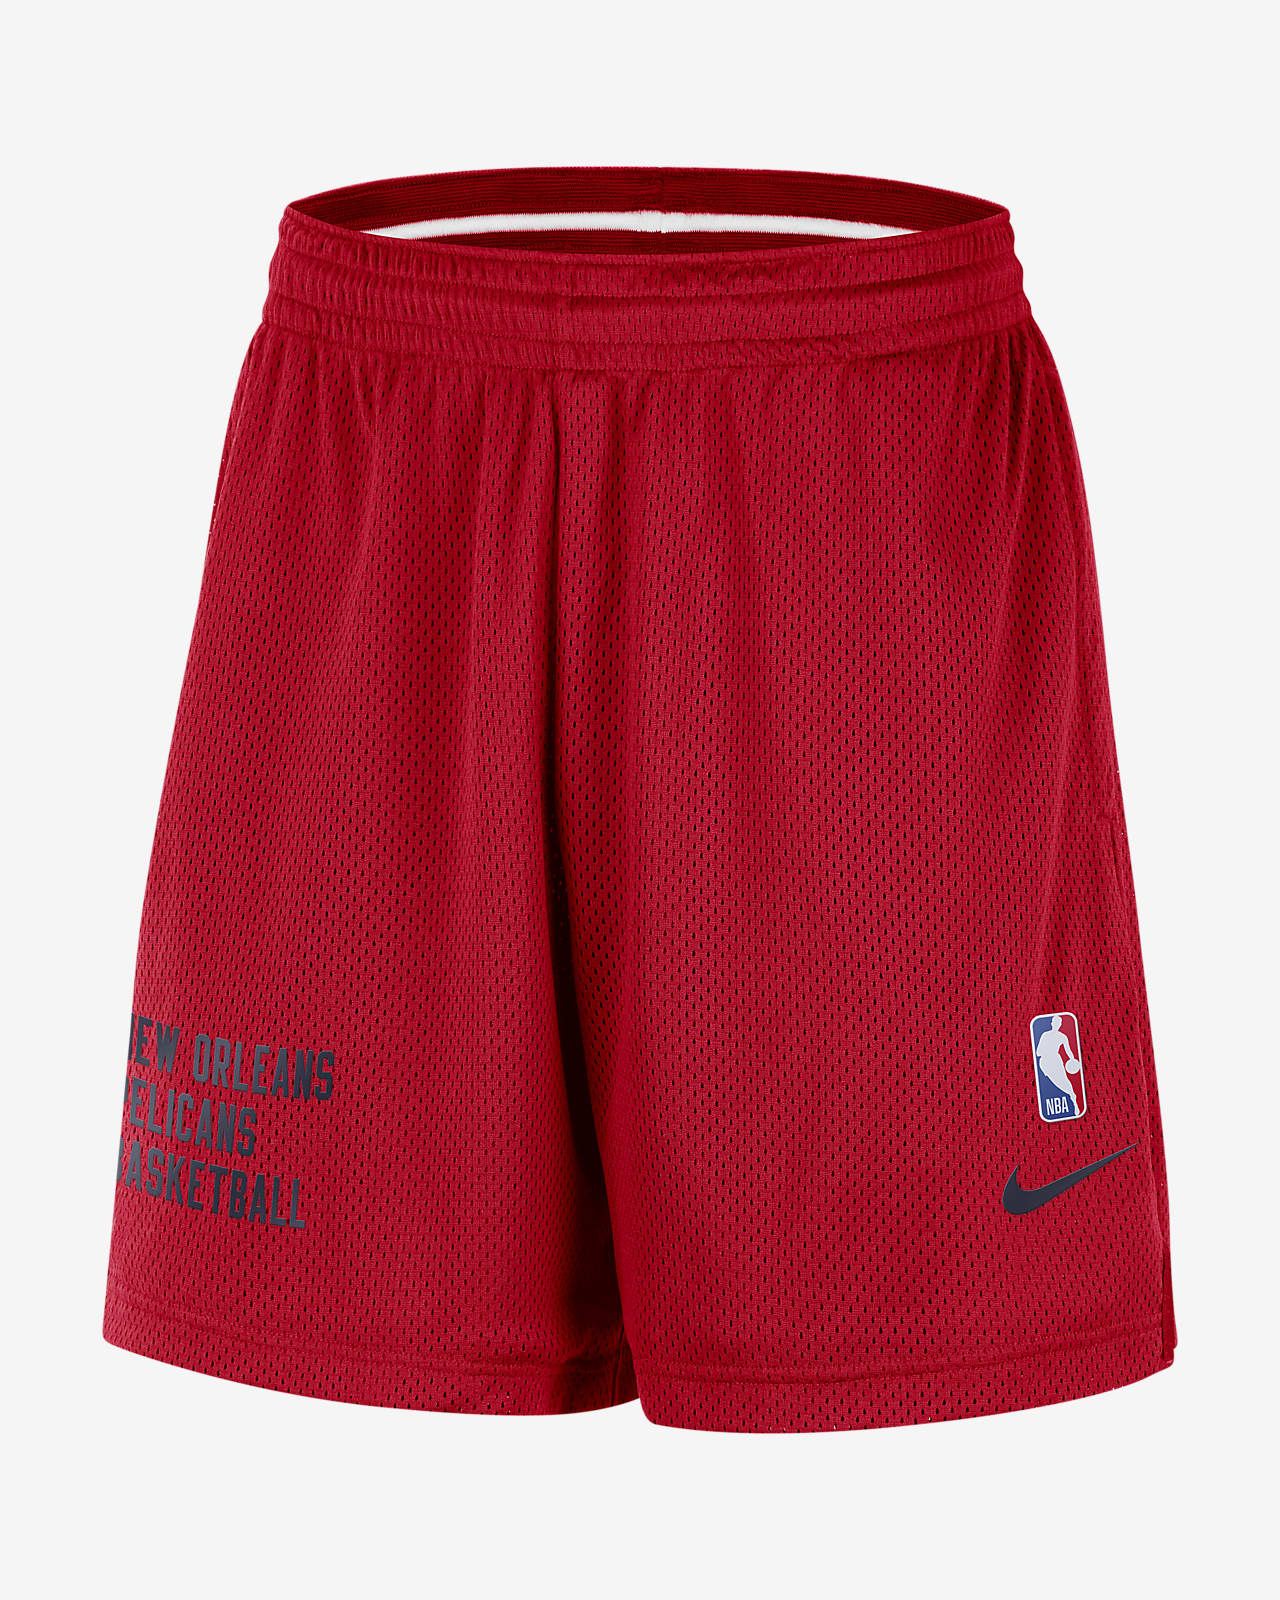 Shorts Nike de malla de la NBA para hombre New Orleans Pelicans